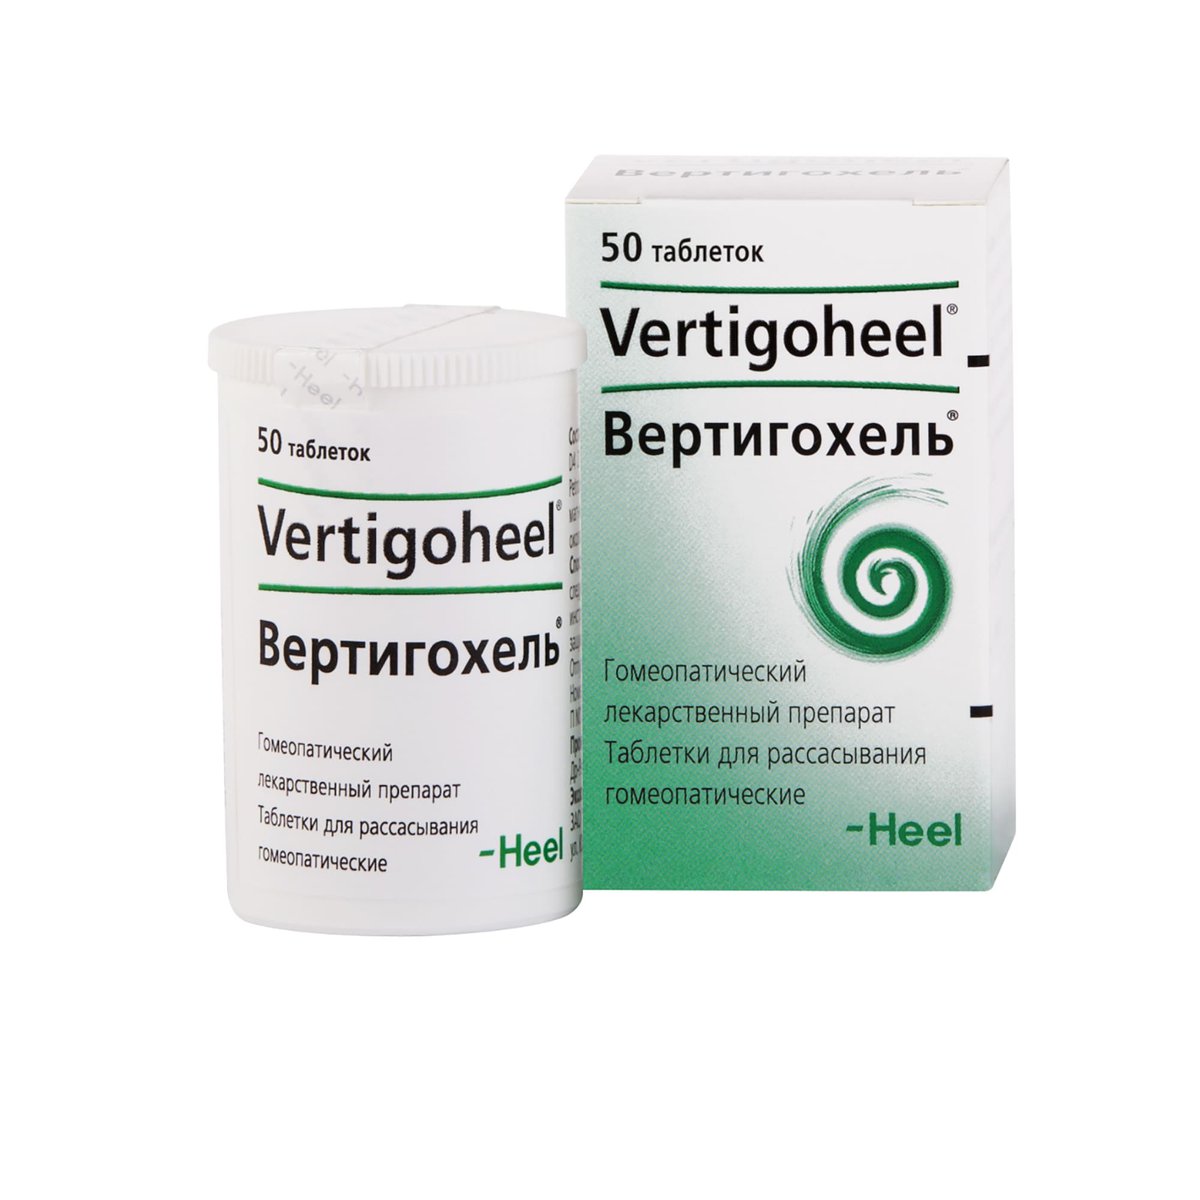 Вертигохель (таблетки, 50 шт, для рассасывания) - цена,  онлайн в .